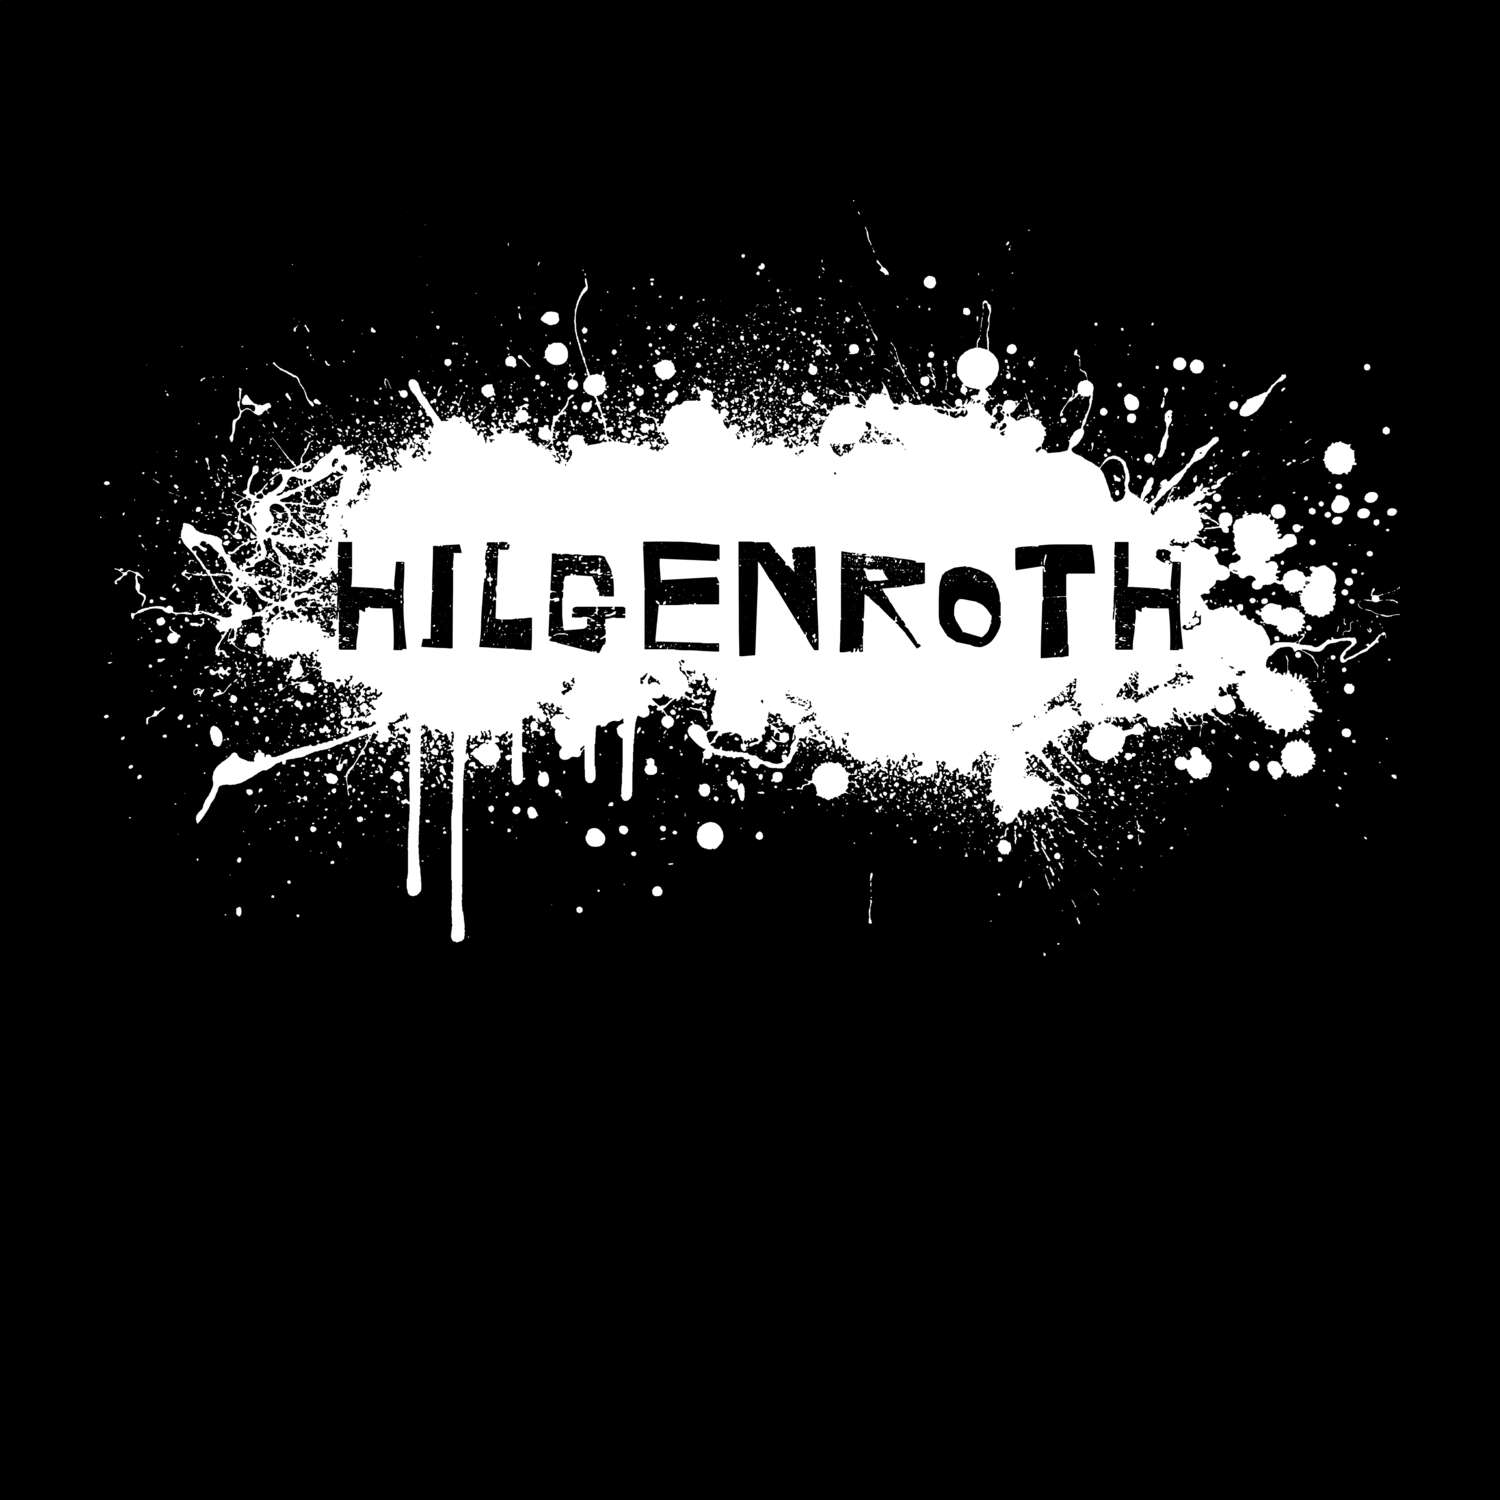 Hilgenroth T-Shirt »Paint Splash Punk«